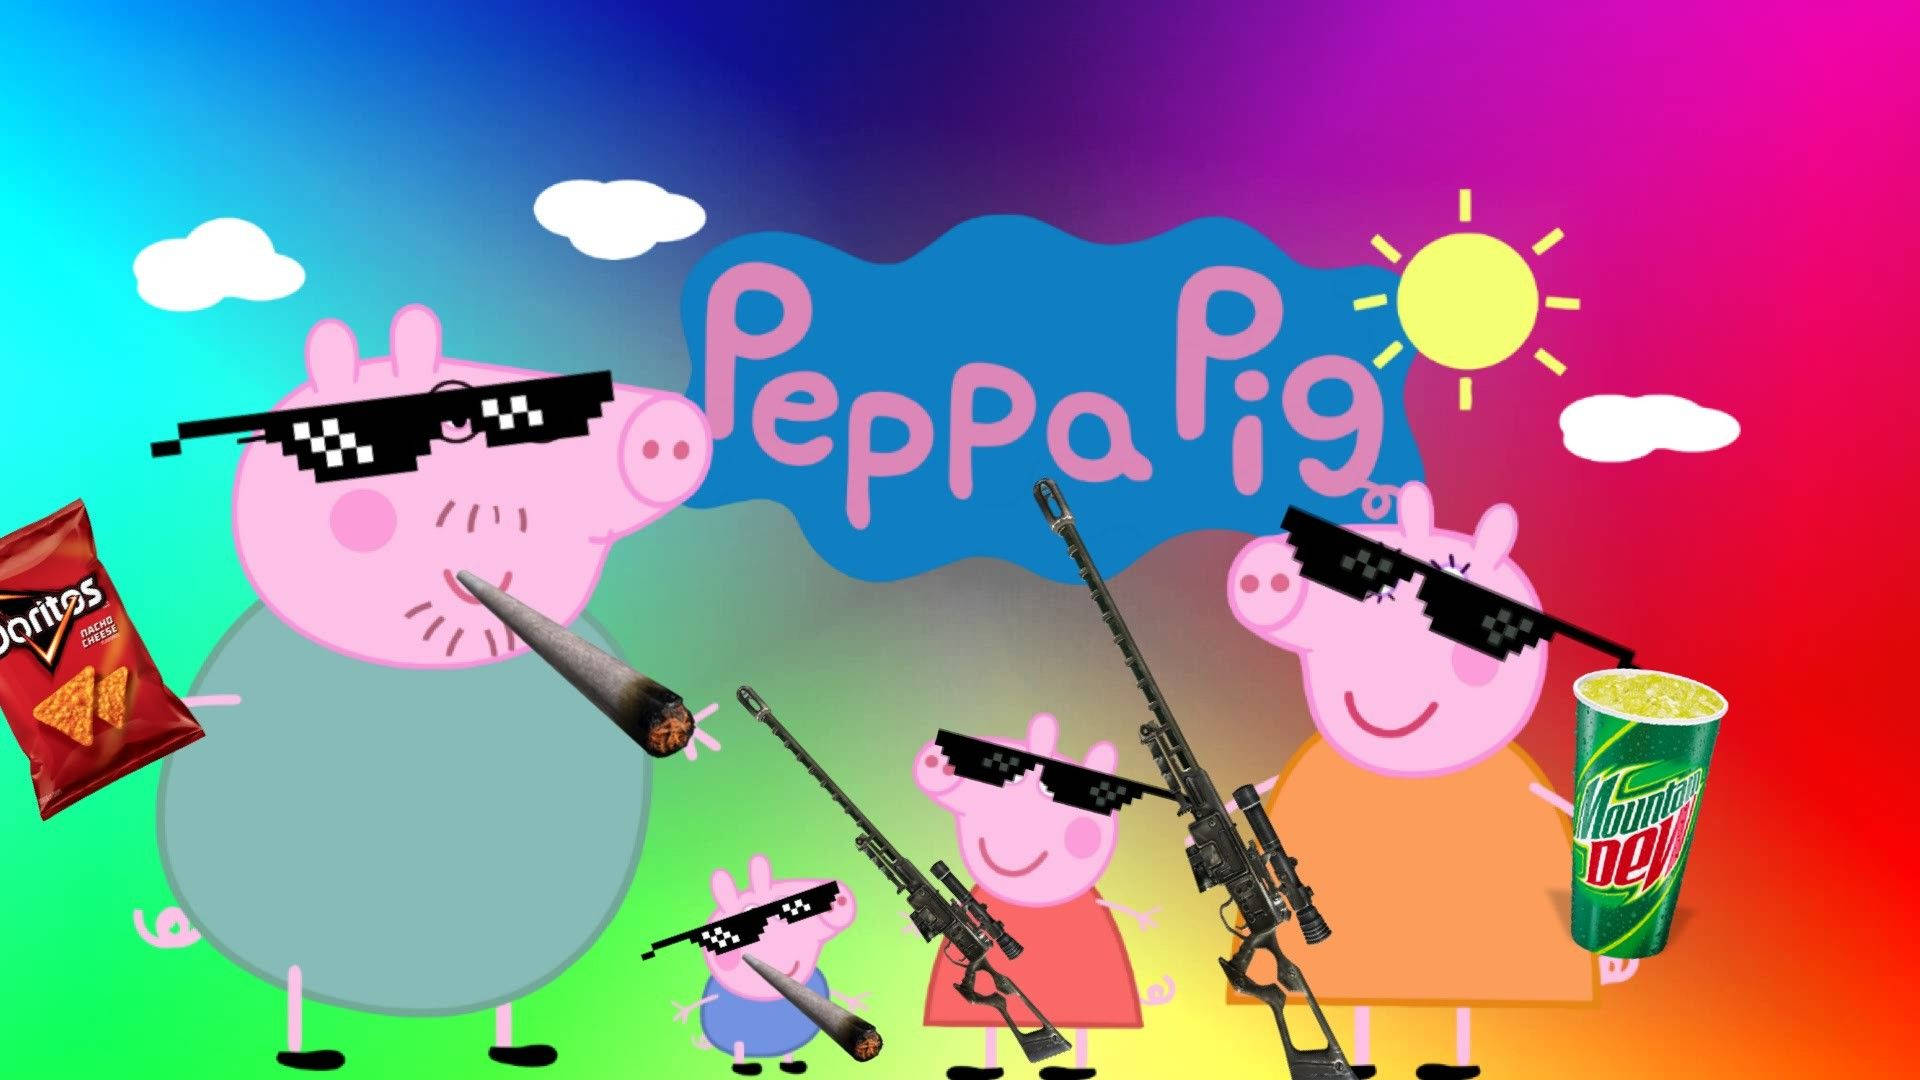 Peppa Pig Baddie Wallpapers